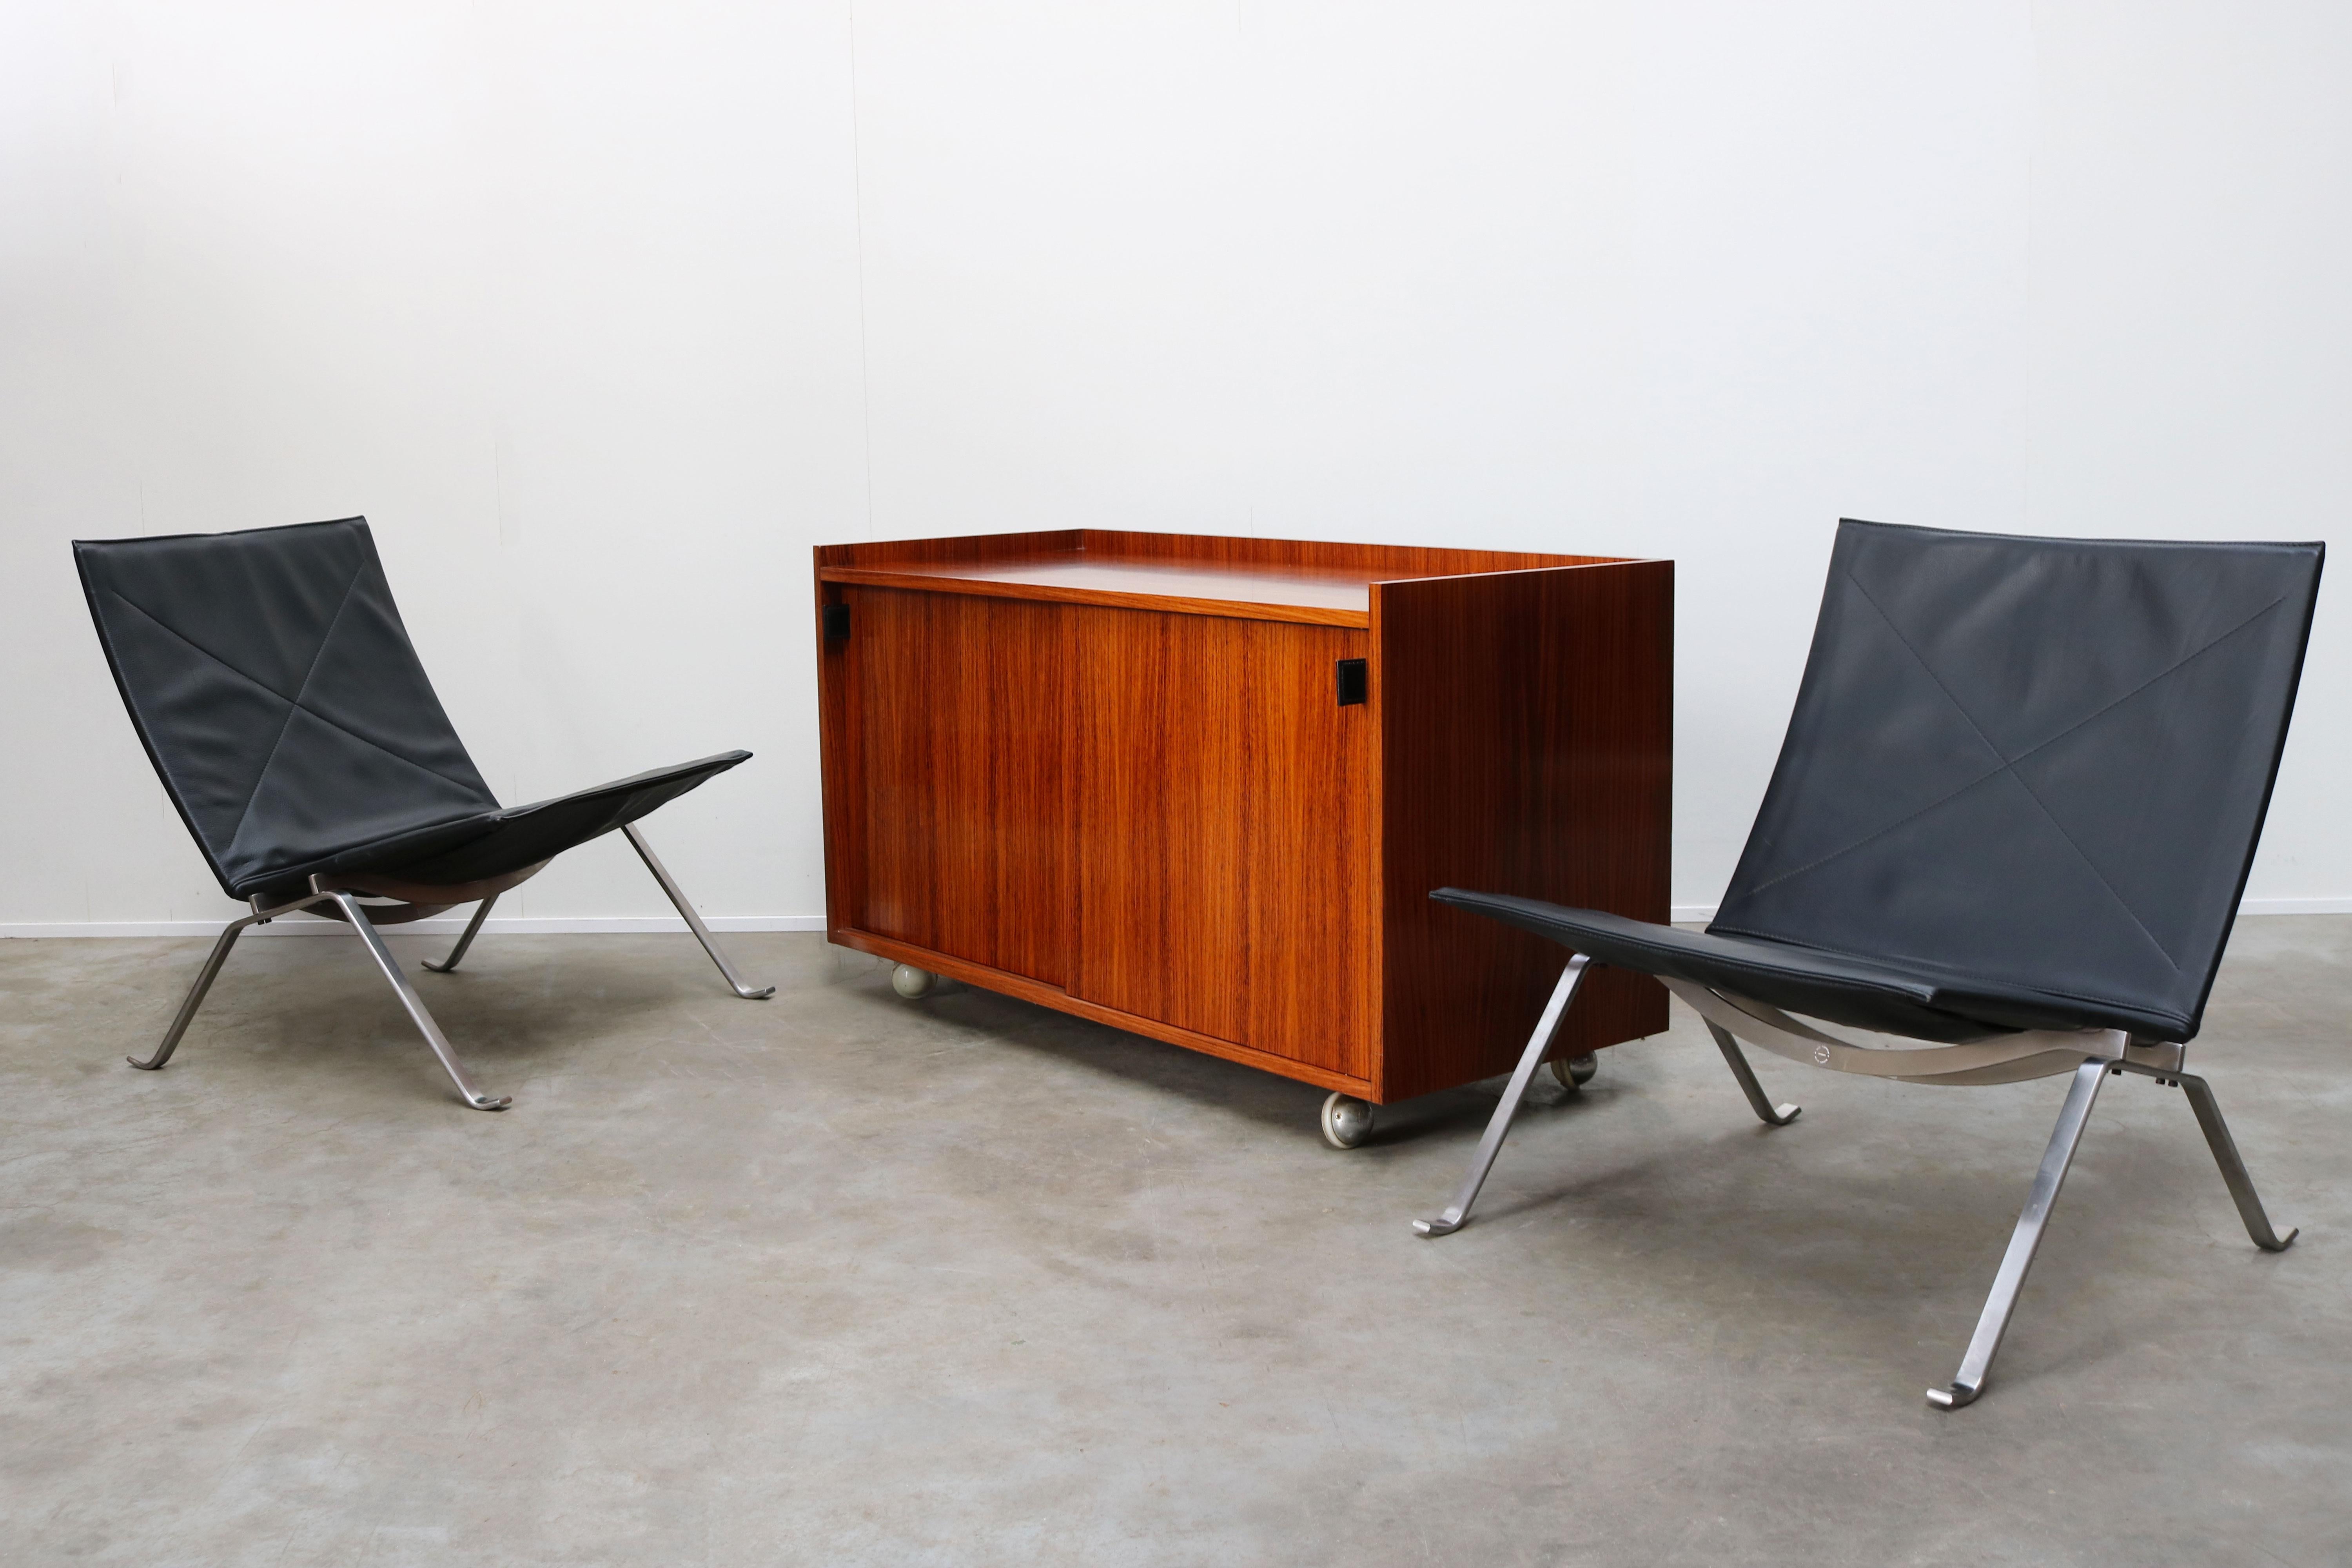 Vintage-Design-Credenza / Sideboard aus Palisanderholz mit Ledergriffen, entworfen von Florence Knoll für De Coene Belgium in den 1960er Jahren. Wunderschönes, klares, minimalistisches, modernistisches Design aus Palisanderholz, das Stück ist an